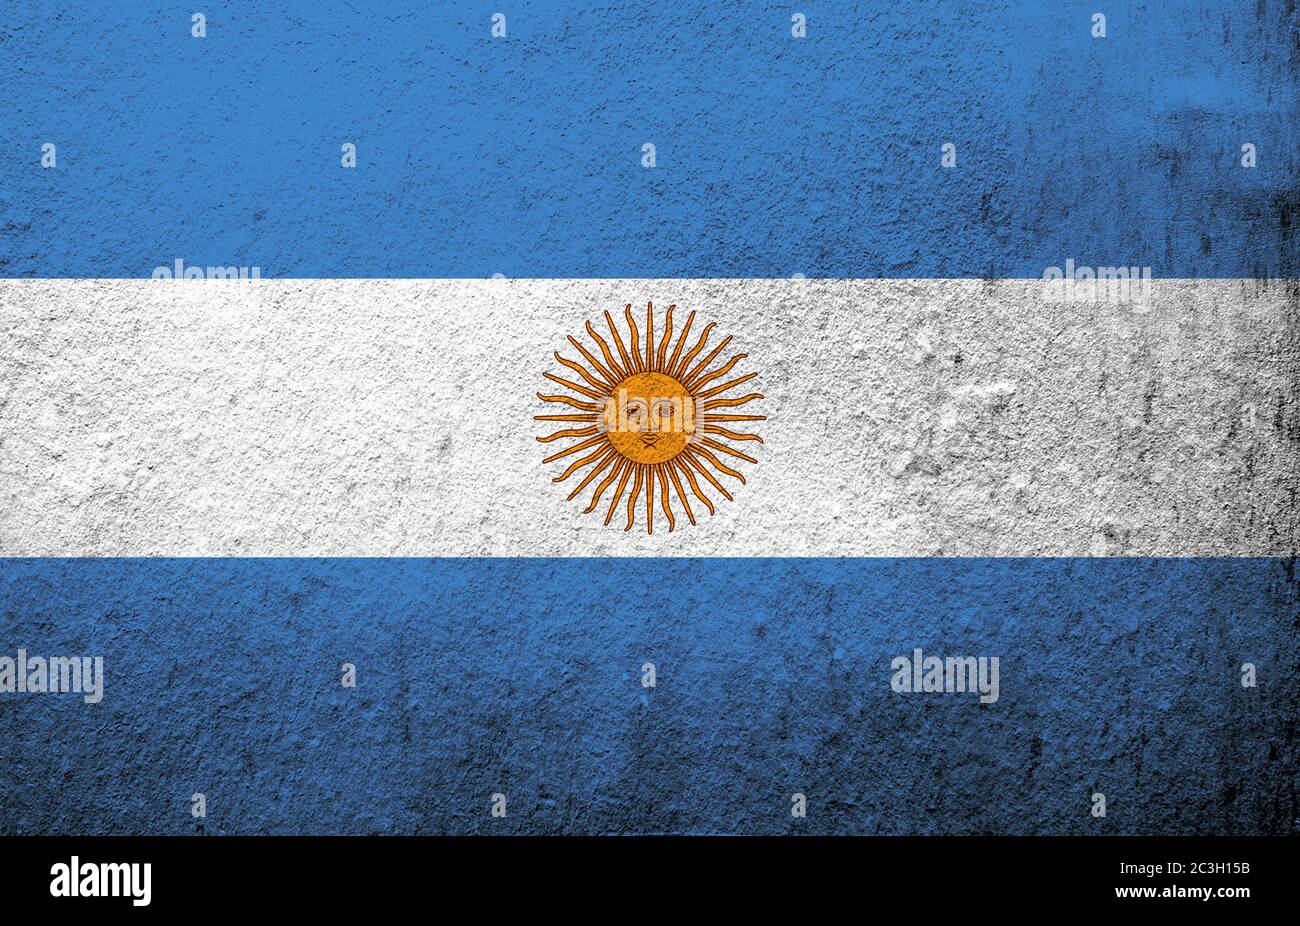 National flag of Argentina (Argentine Republic). Grunge background Stock Photo